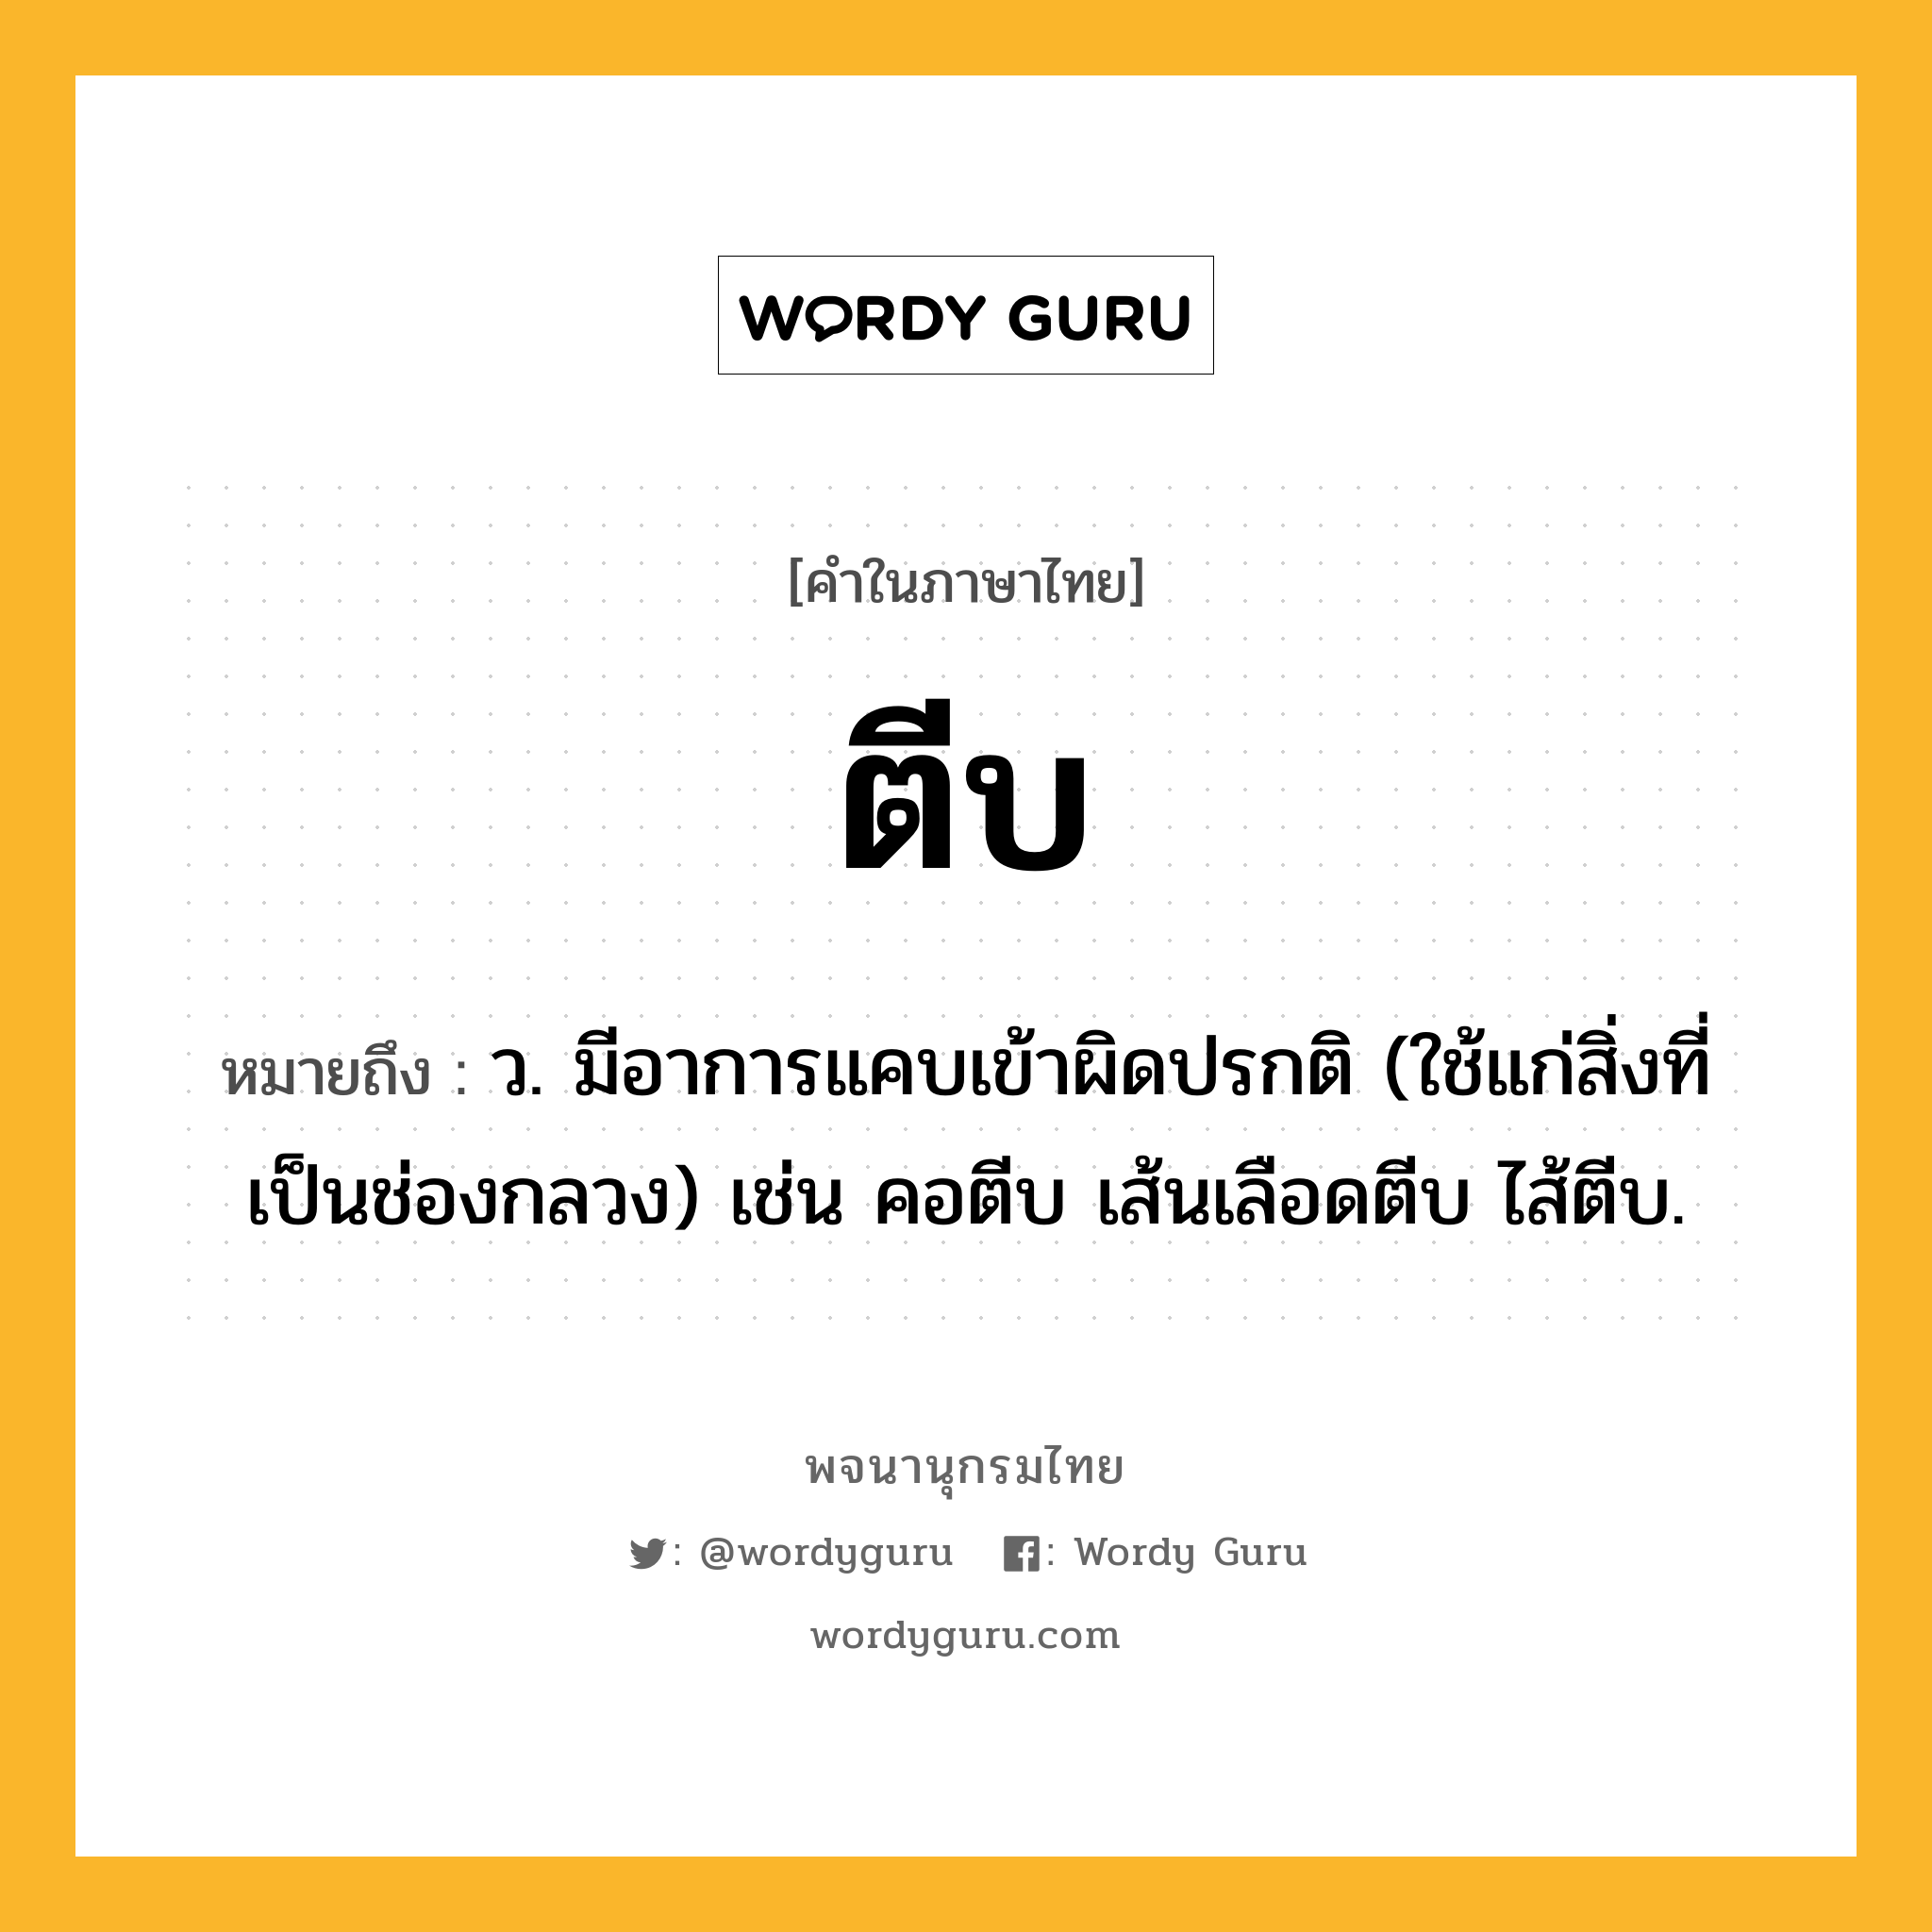 ตีบ ความหมาย หมายถึงอะไร?, คำในภาษาไทย ตีบ หมายถึง ว. มีอาการแคบเข้าผิดปรกติ (ใช้แก่สิ่งที่เป็นช่องกลวง) เช่น คอตีบ เส้นเลือดตีบ ไส้ตีบ.